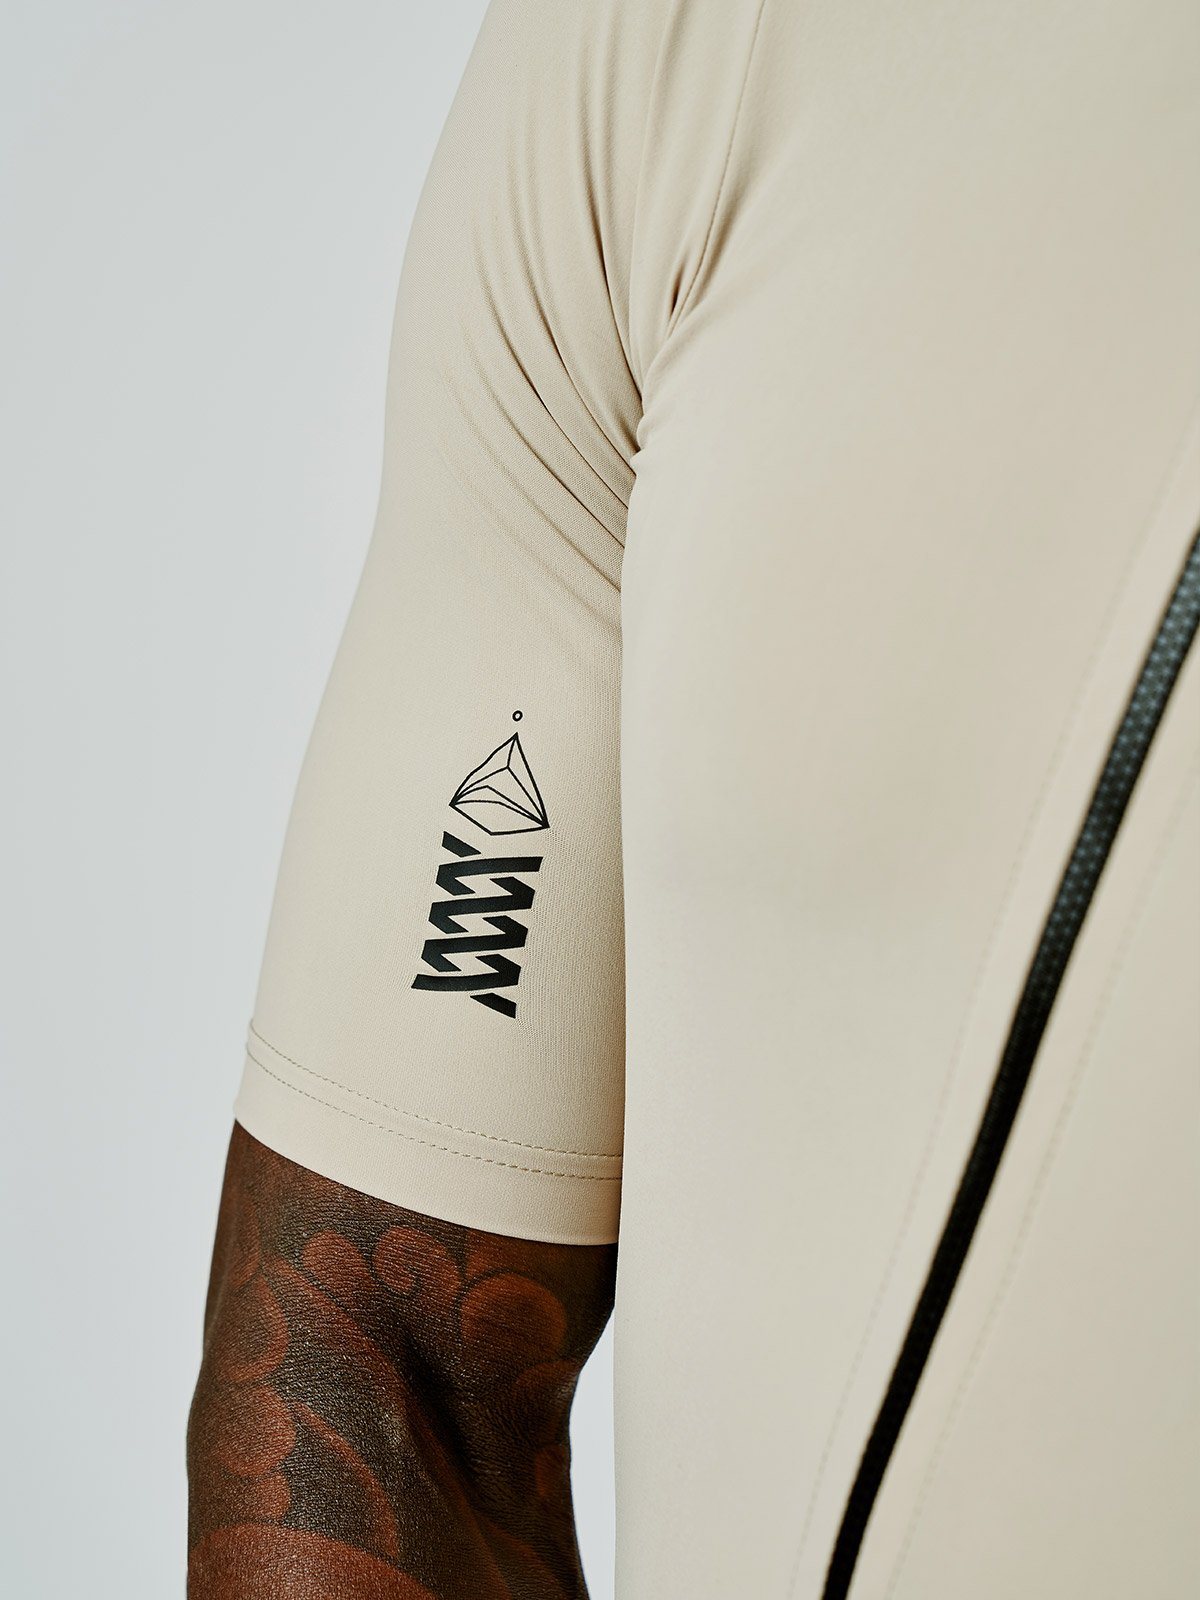 Mission Pro Jersey Men's by Mission Workshop - Säänkestävät laukut ja tekniset vaatteet - San Francisco & Los Angeles - Kestävä - ikuinen takuu